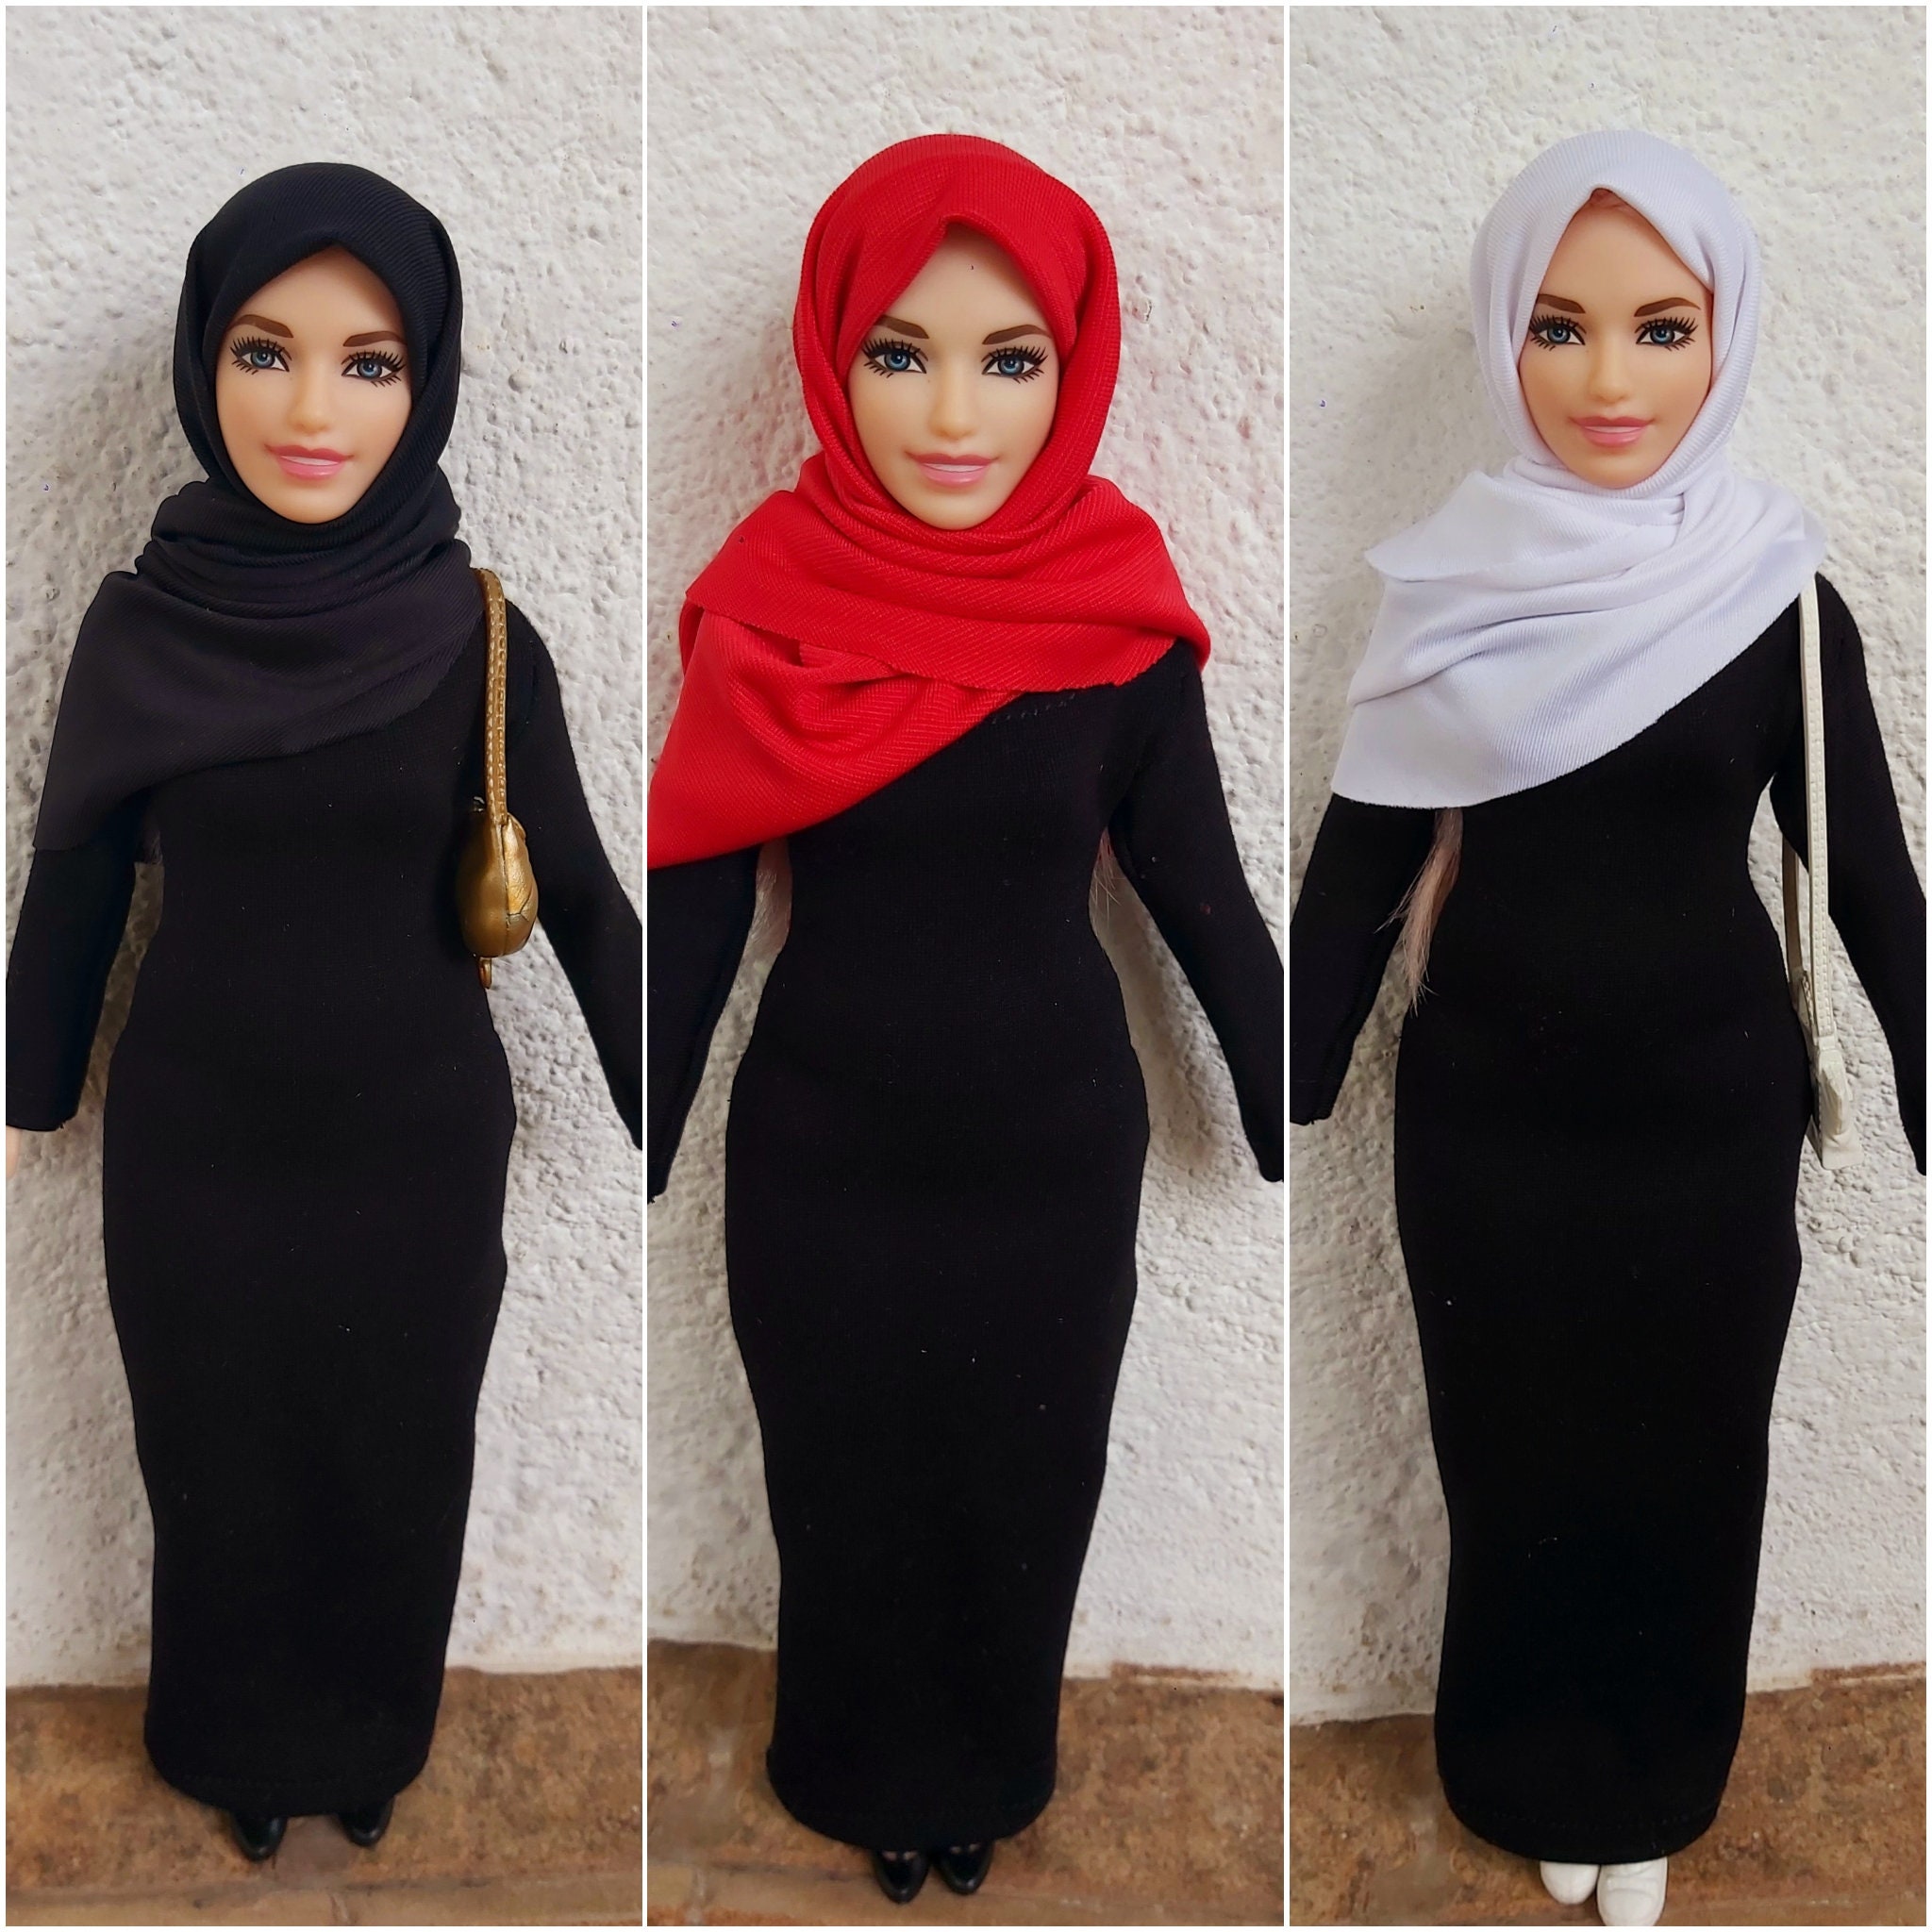 Hijab Outfit for Dolls/muslim Doll/hijab Fashion/curvy Doll